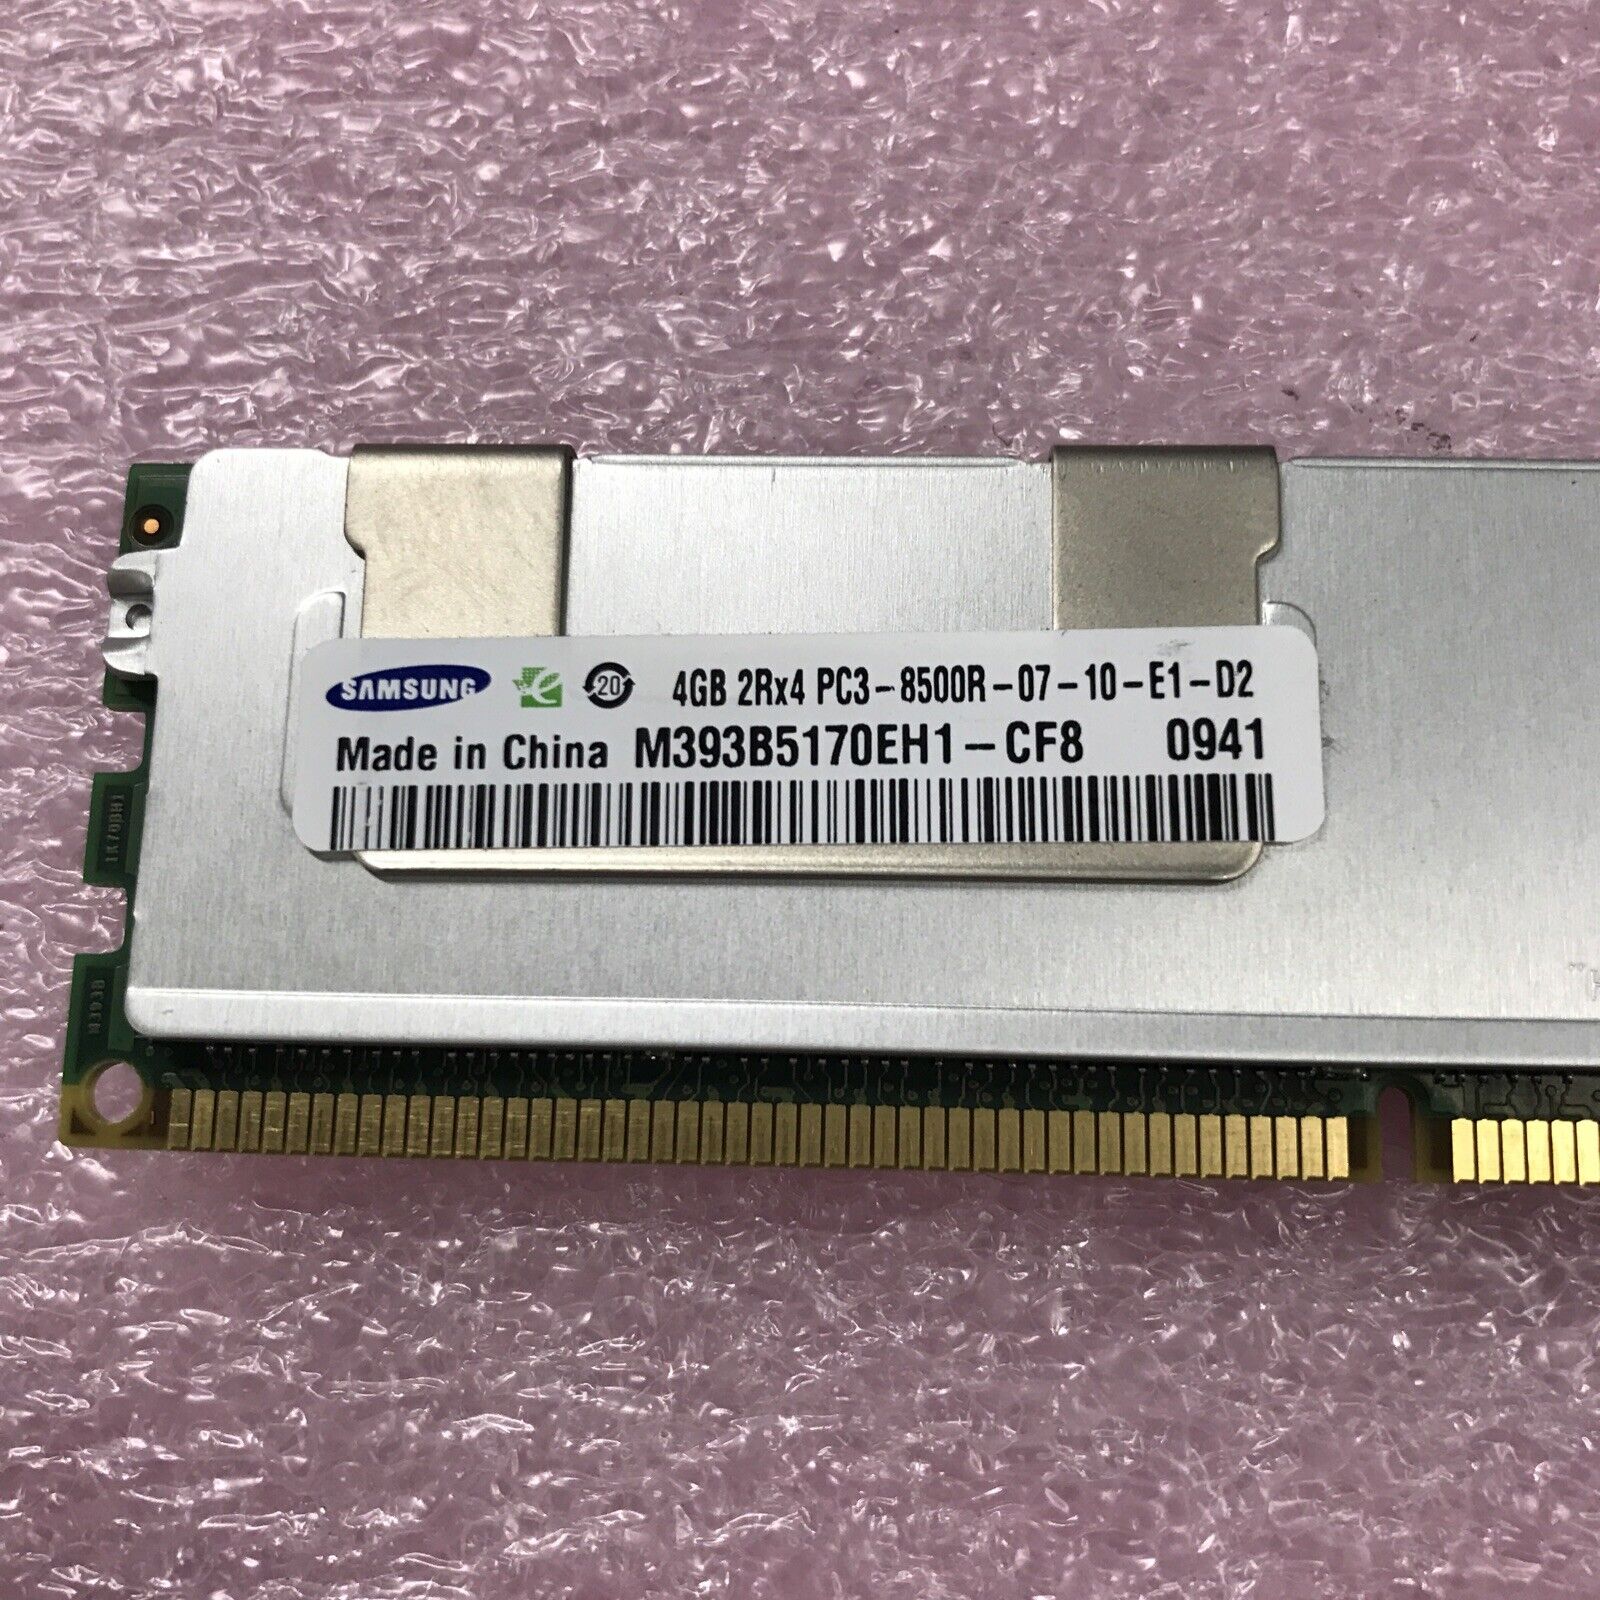 Samsung 36GB Kit 2Rx4 PC3-8500R-07-10-E1-D2 Server Ram M393B5170EH1-CFB